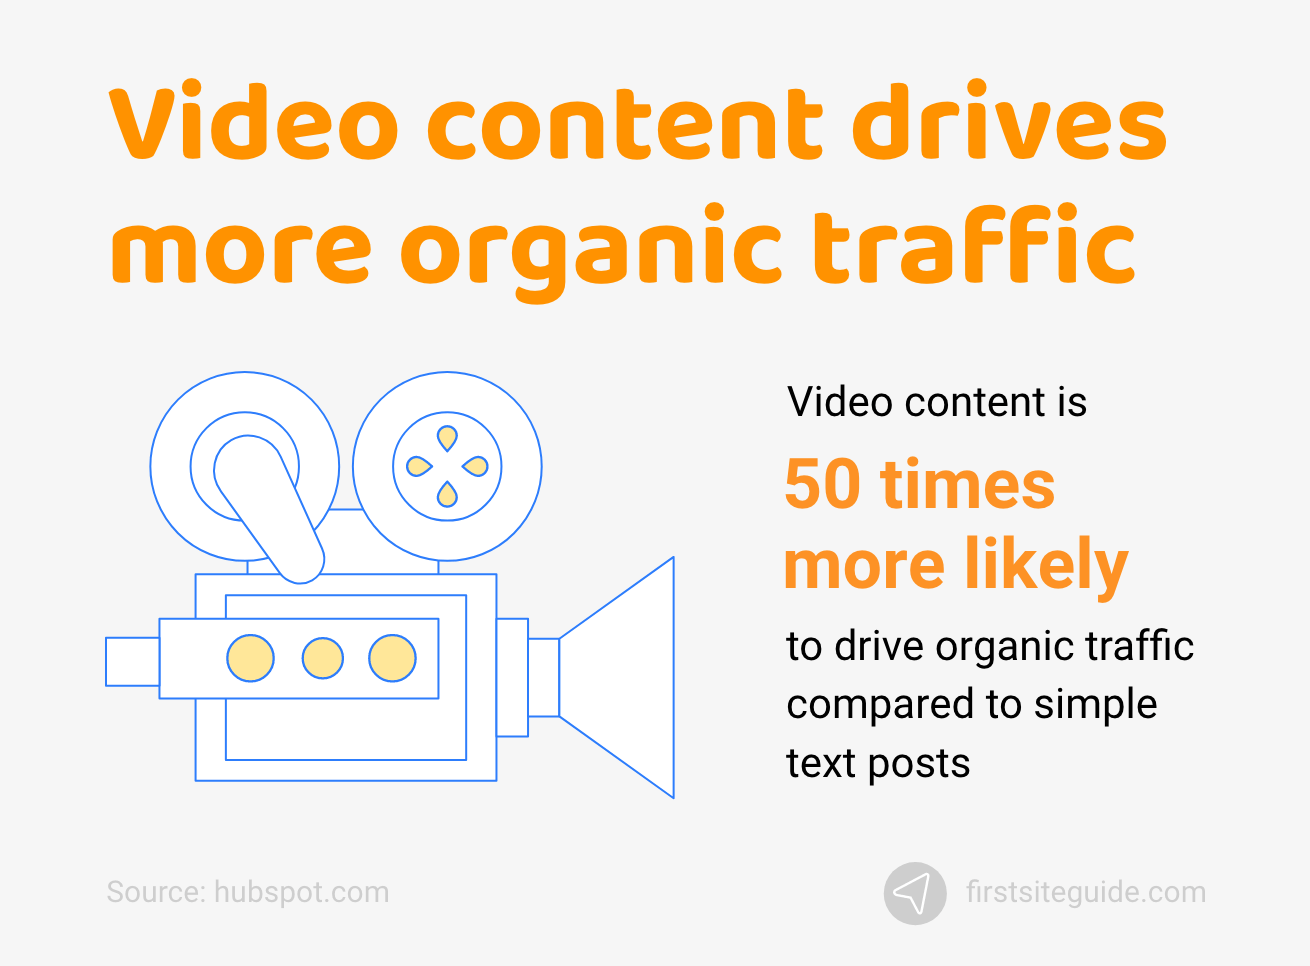 El contenido de video genera más tráfico orgánico